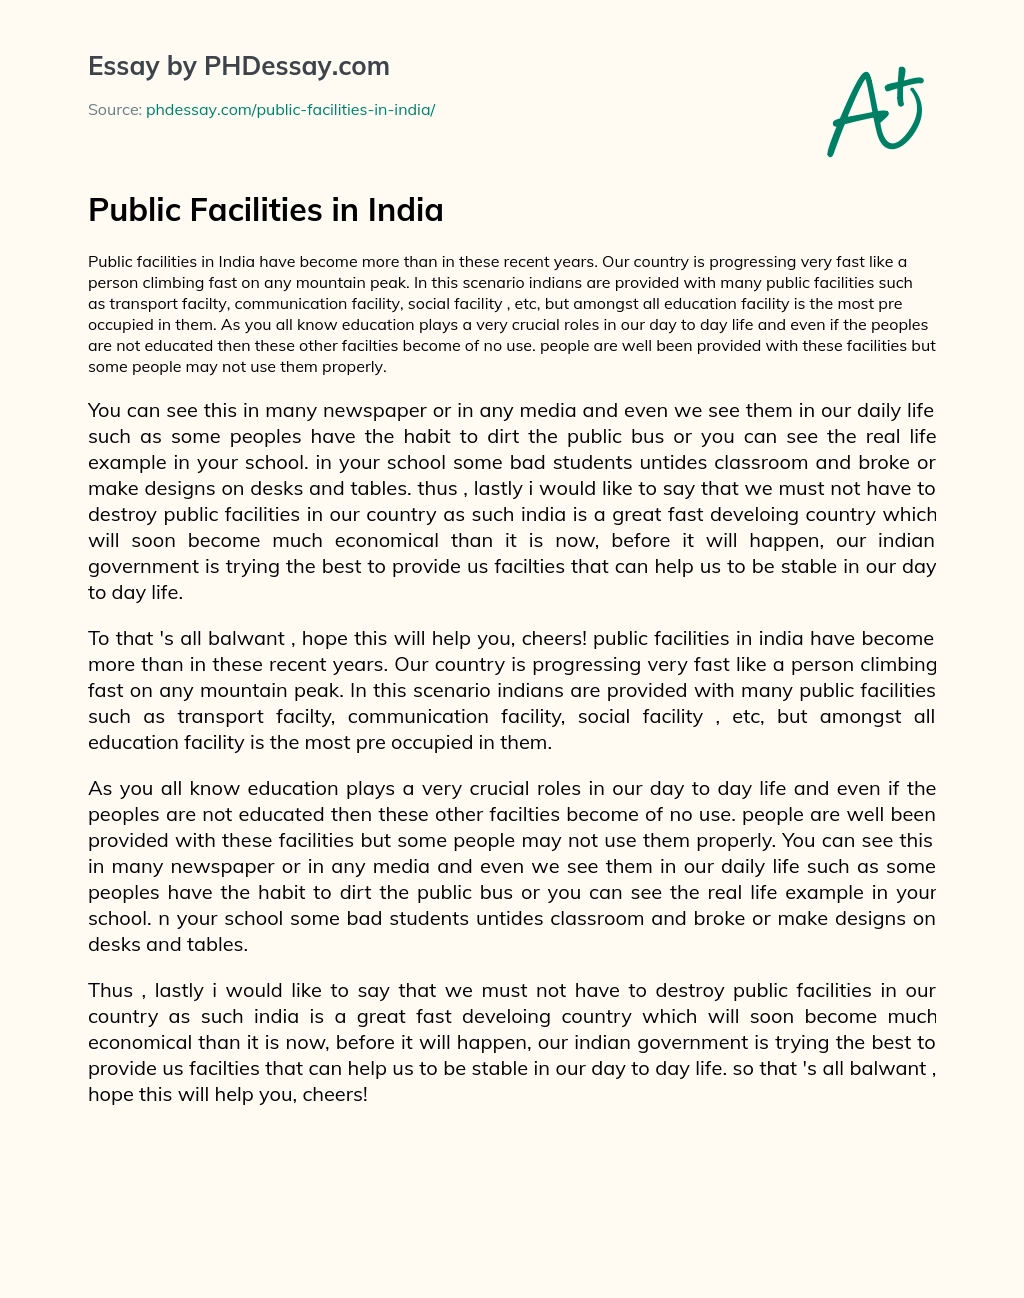 Public Facilities in India essay